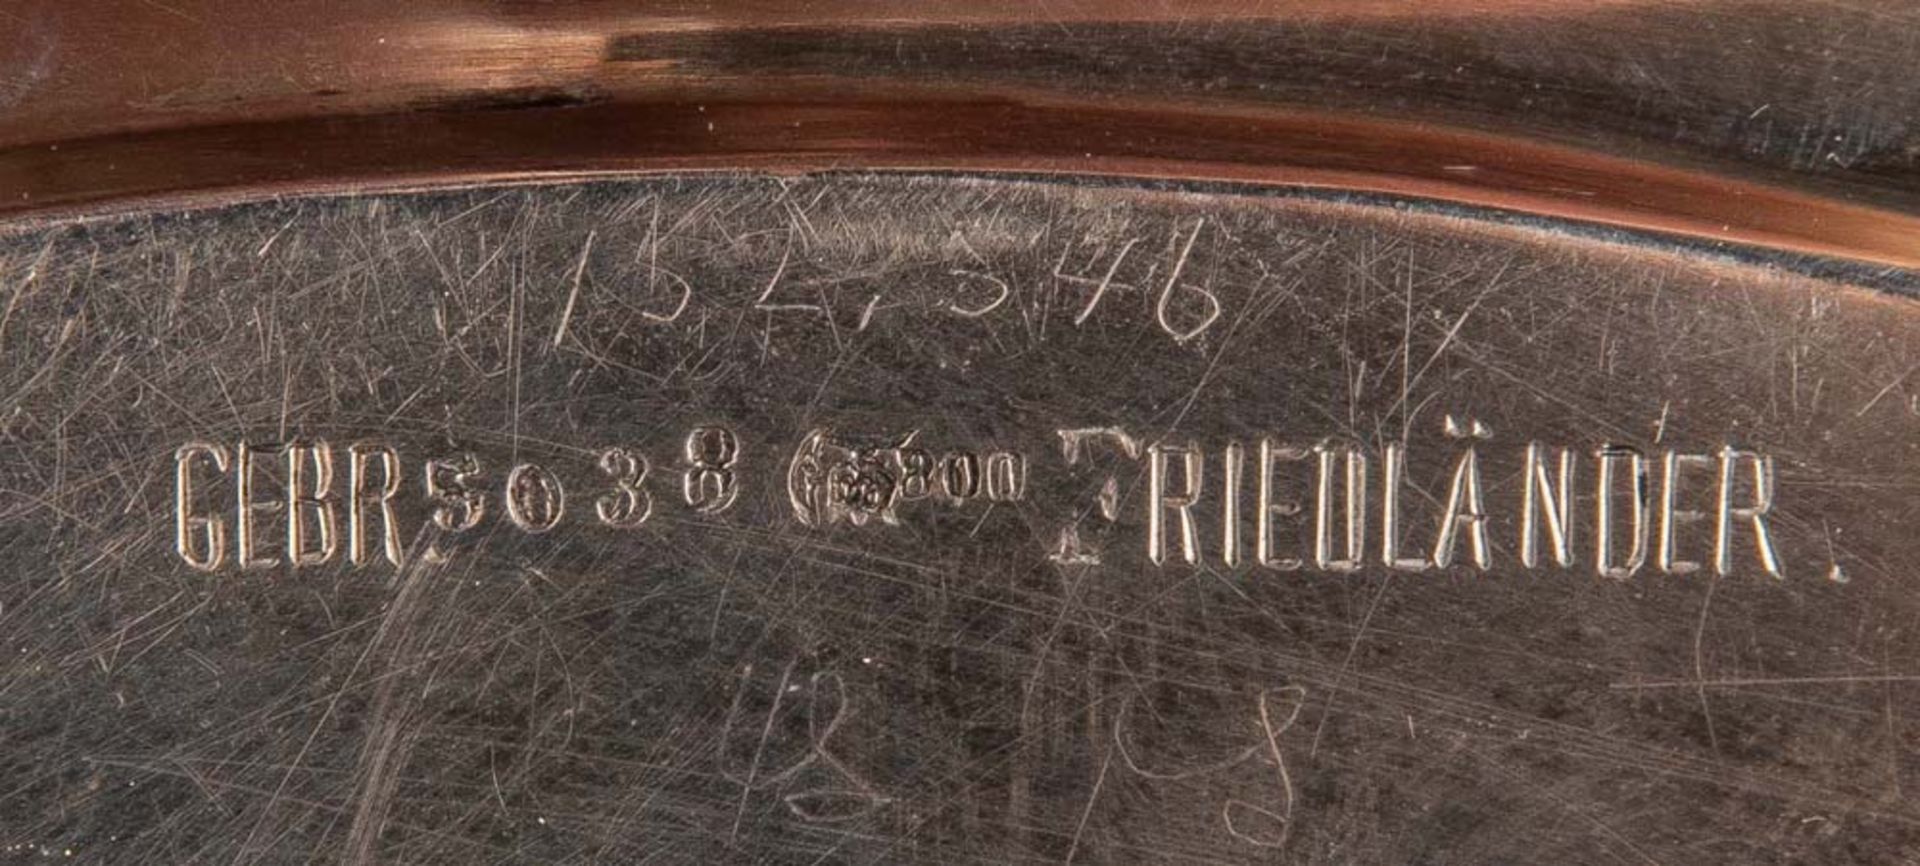 Rundes Tablett. Berlin, Gebr. Friedländer um 1900. 800er Silber, ca. 555 g, verso gepunzt, D=30 cm. - Bild 2 aus 2